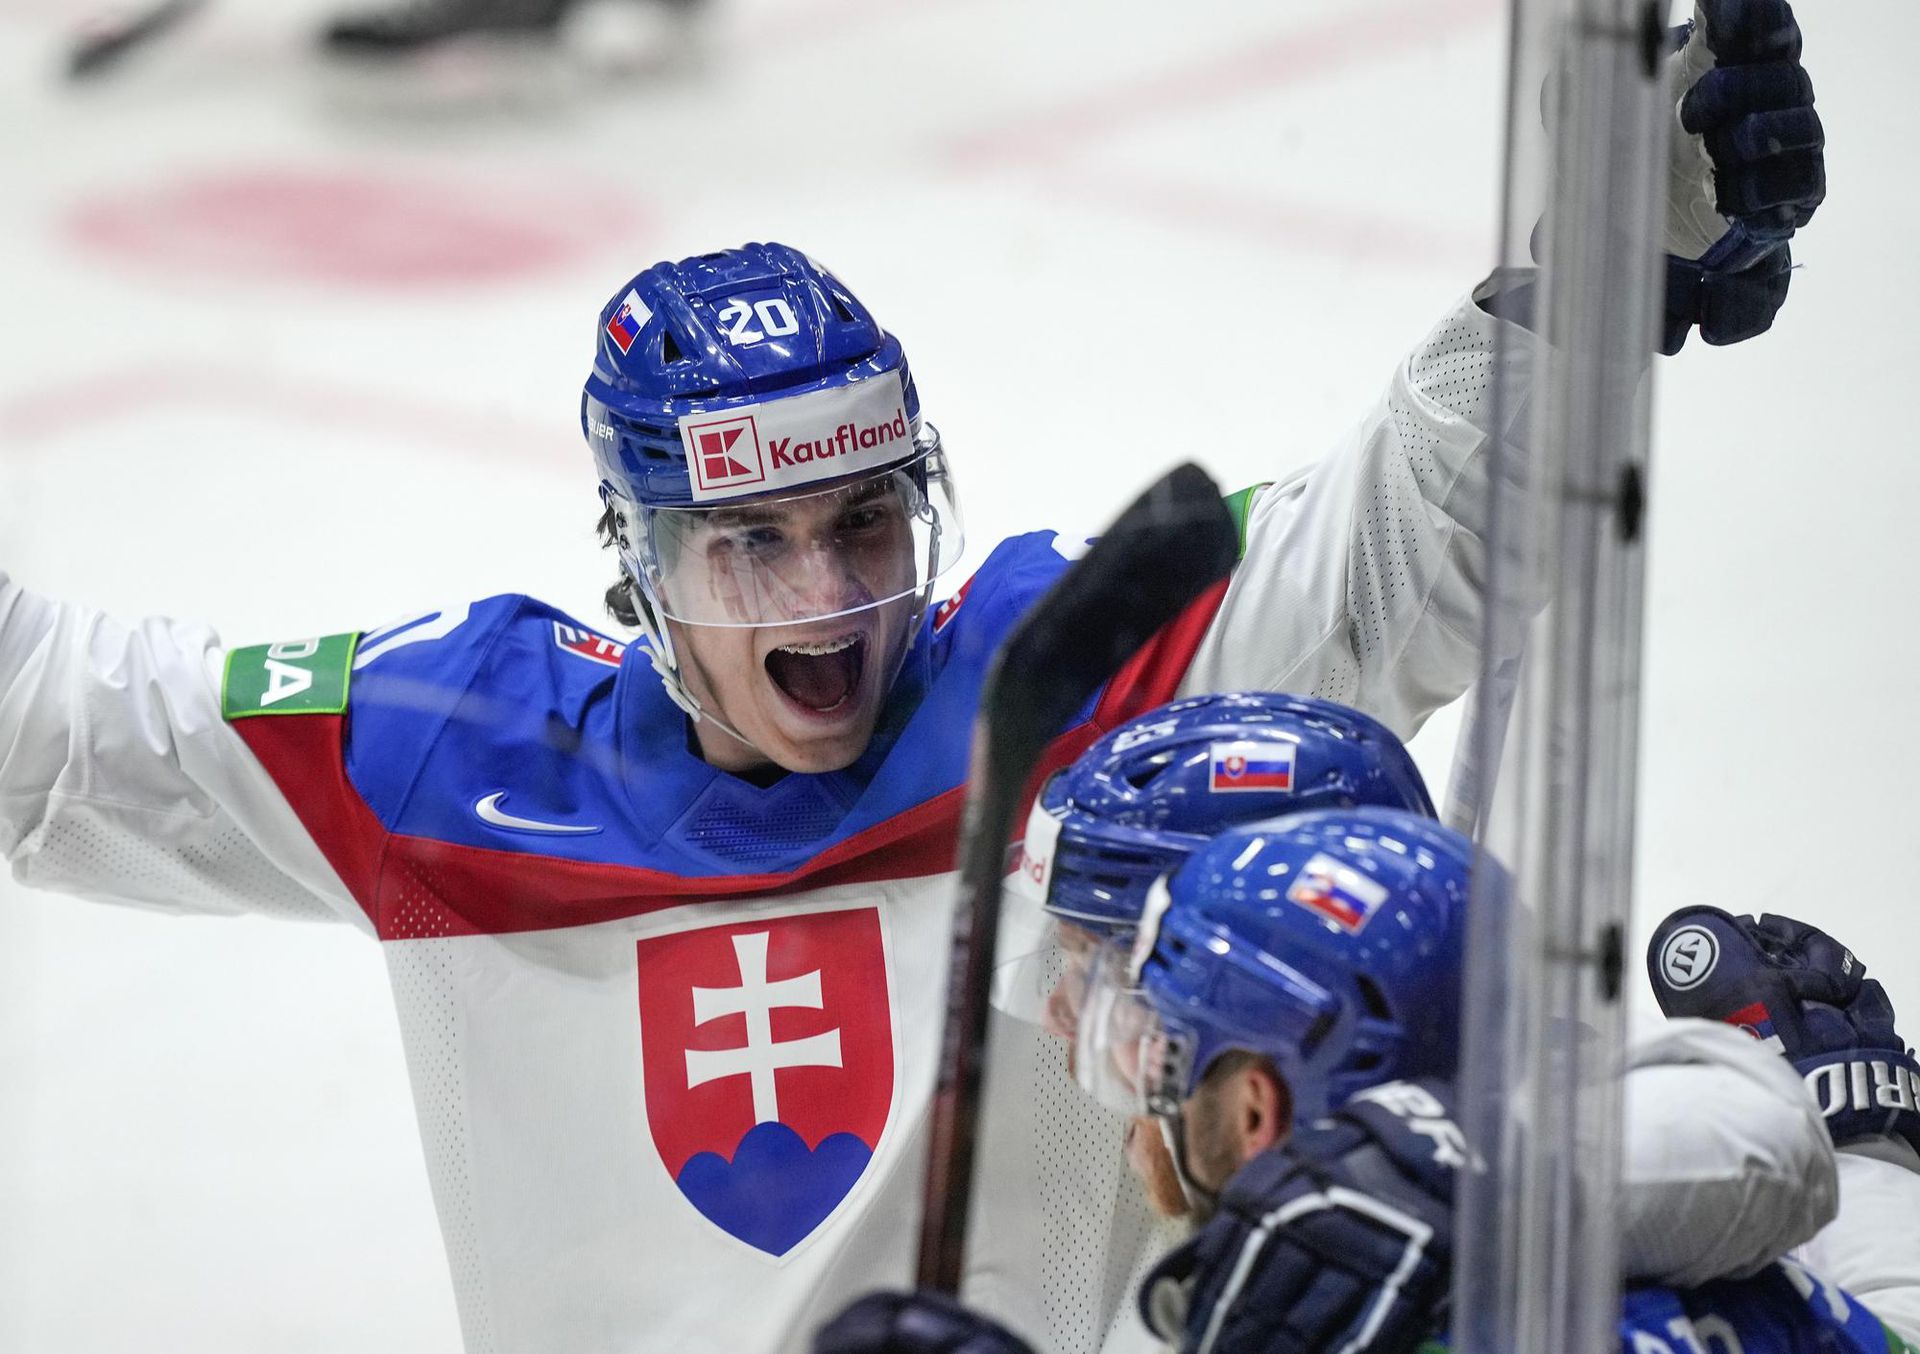 MS v hokeji 2022: Slovensko - Dánsko (Juraj Slafkovský sa teší z úvodného gólu) Zdroj: SITA